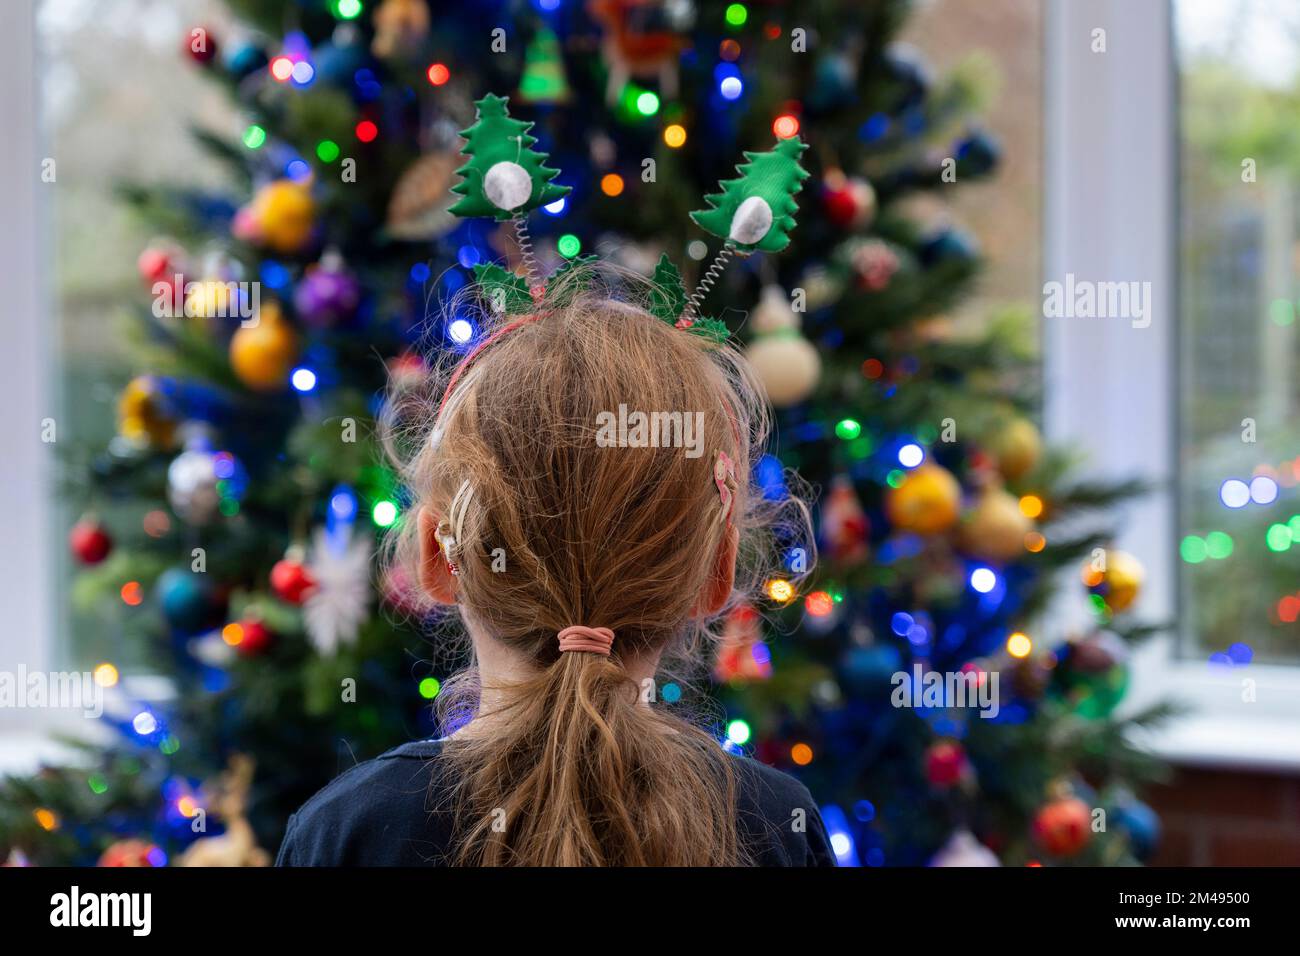 Ein kleines Mädchen (4), das auf einen Weihnachtsbaum schaut, der mit Feenlichtern und Kugeln dekoriert ist. Thema: Weihnachten, Weihnachtsgrüße, Kinderwunder Stockfoto